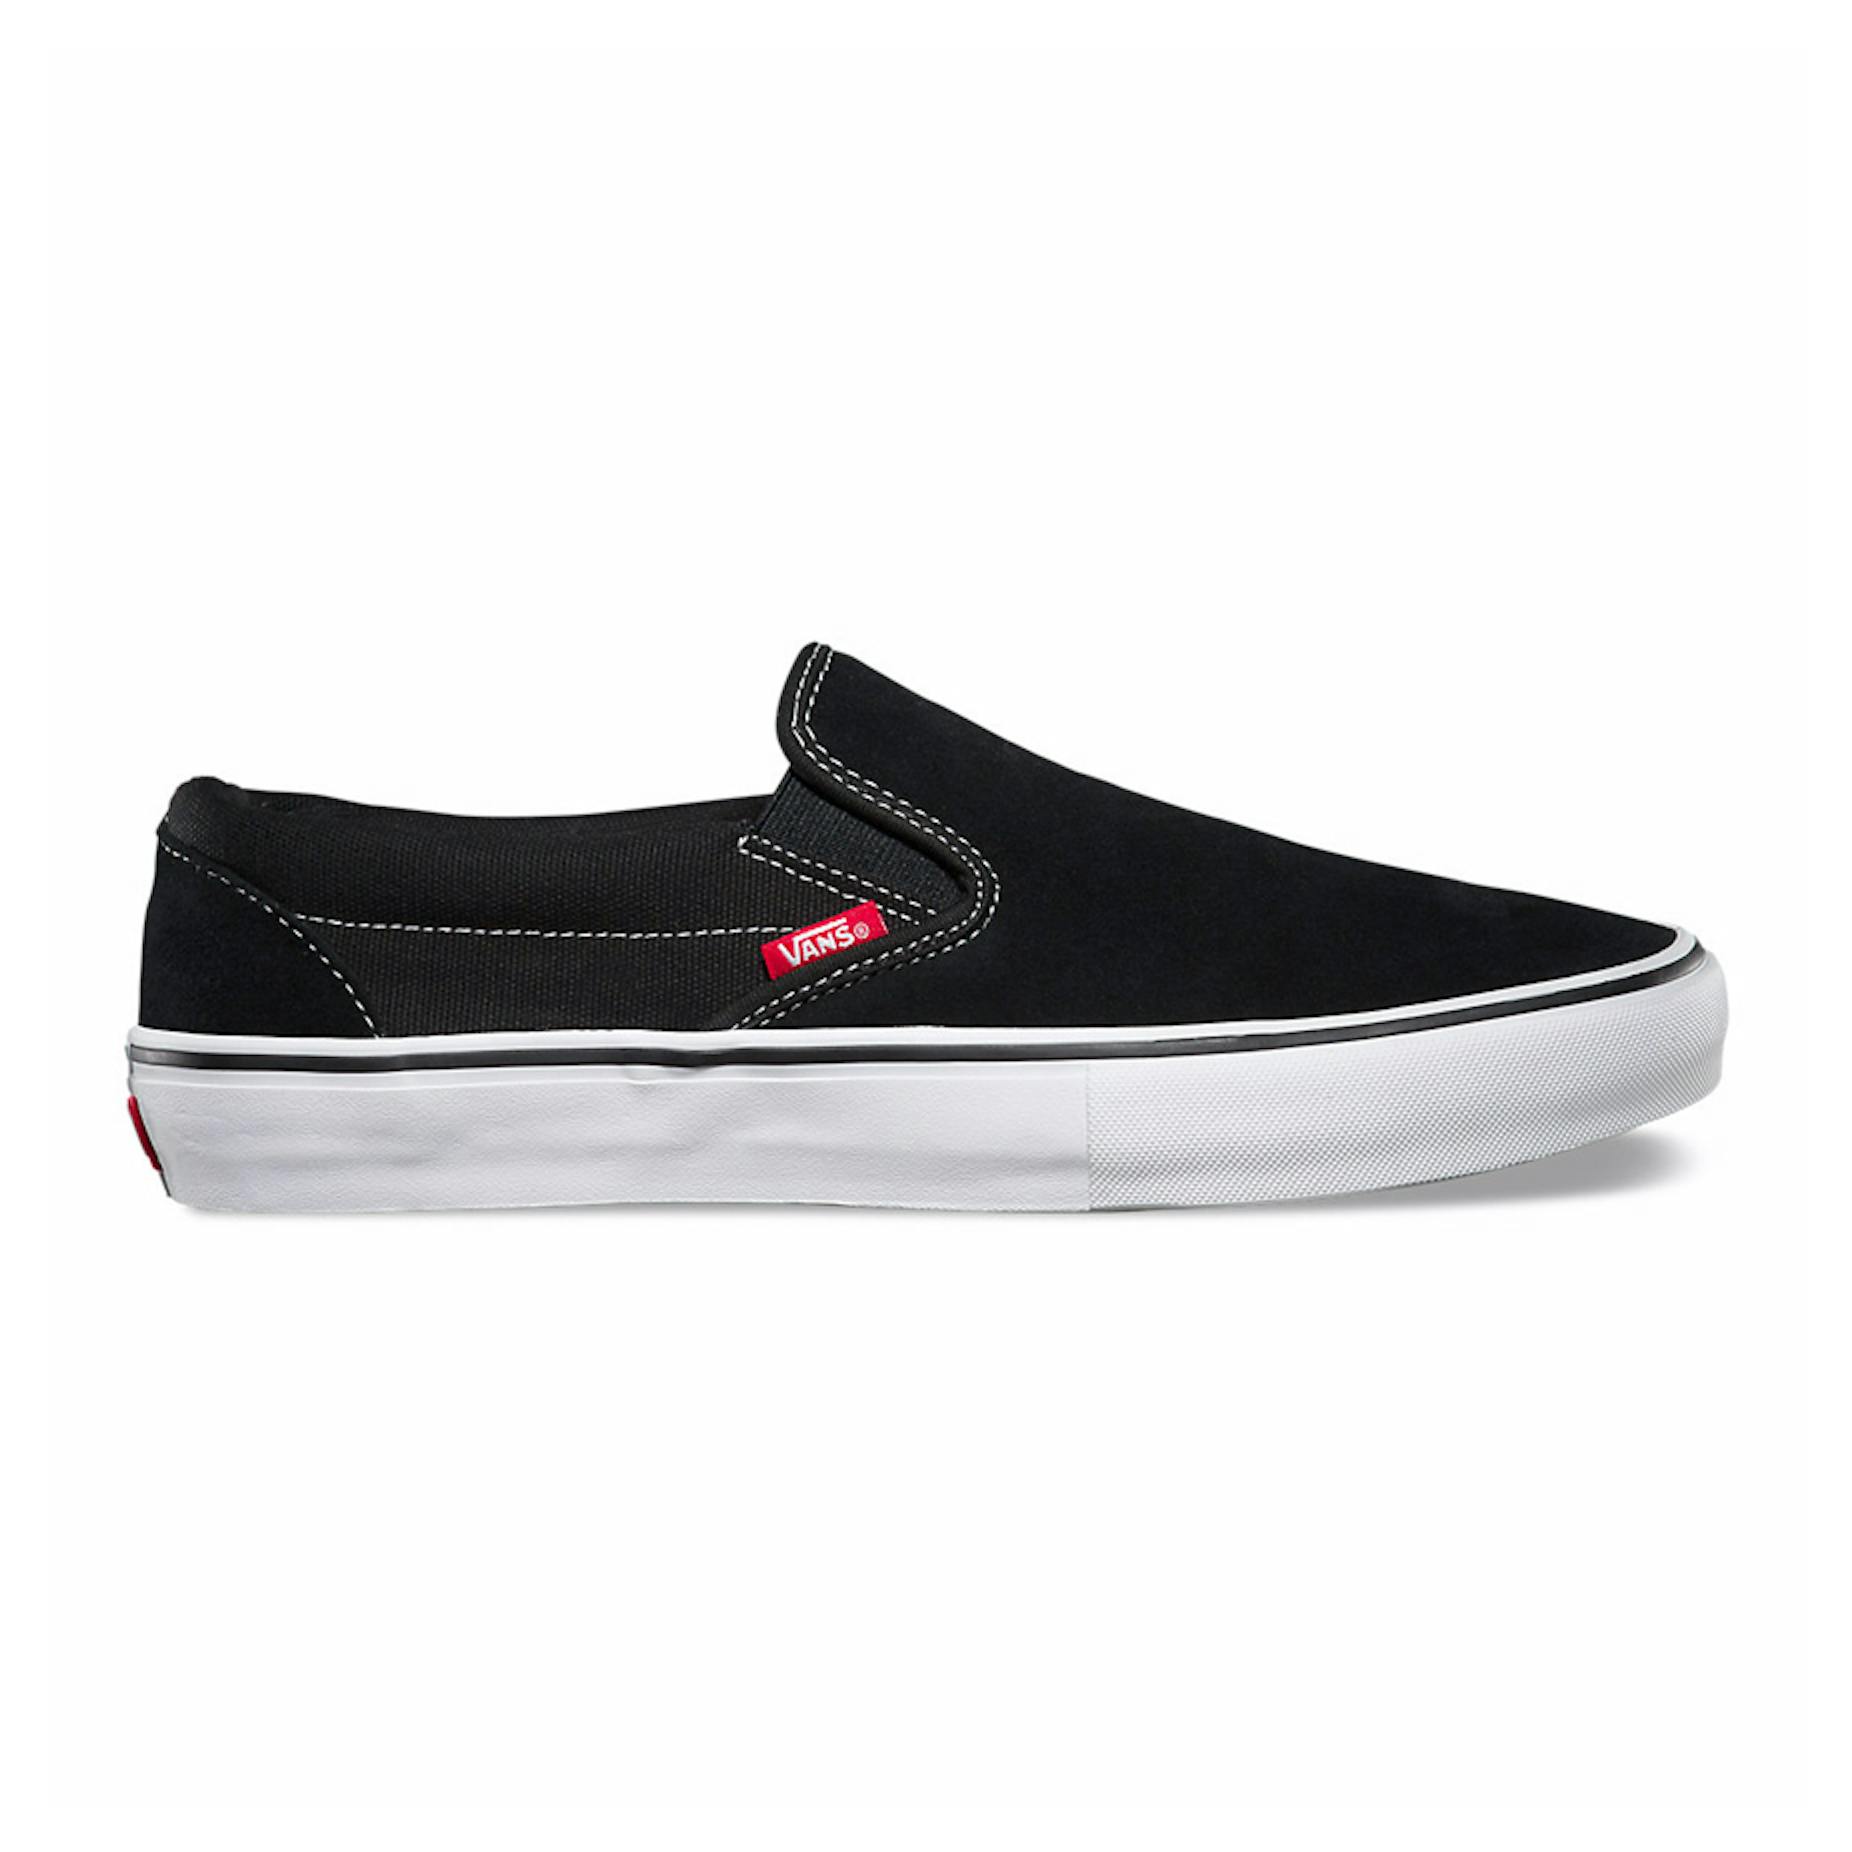 Vans Slip-On Pro Skate Shoe - Black/White/Gum | BOARDWORLD Store